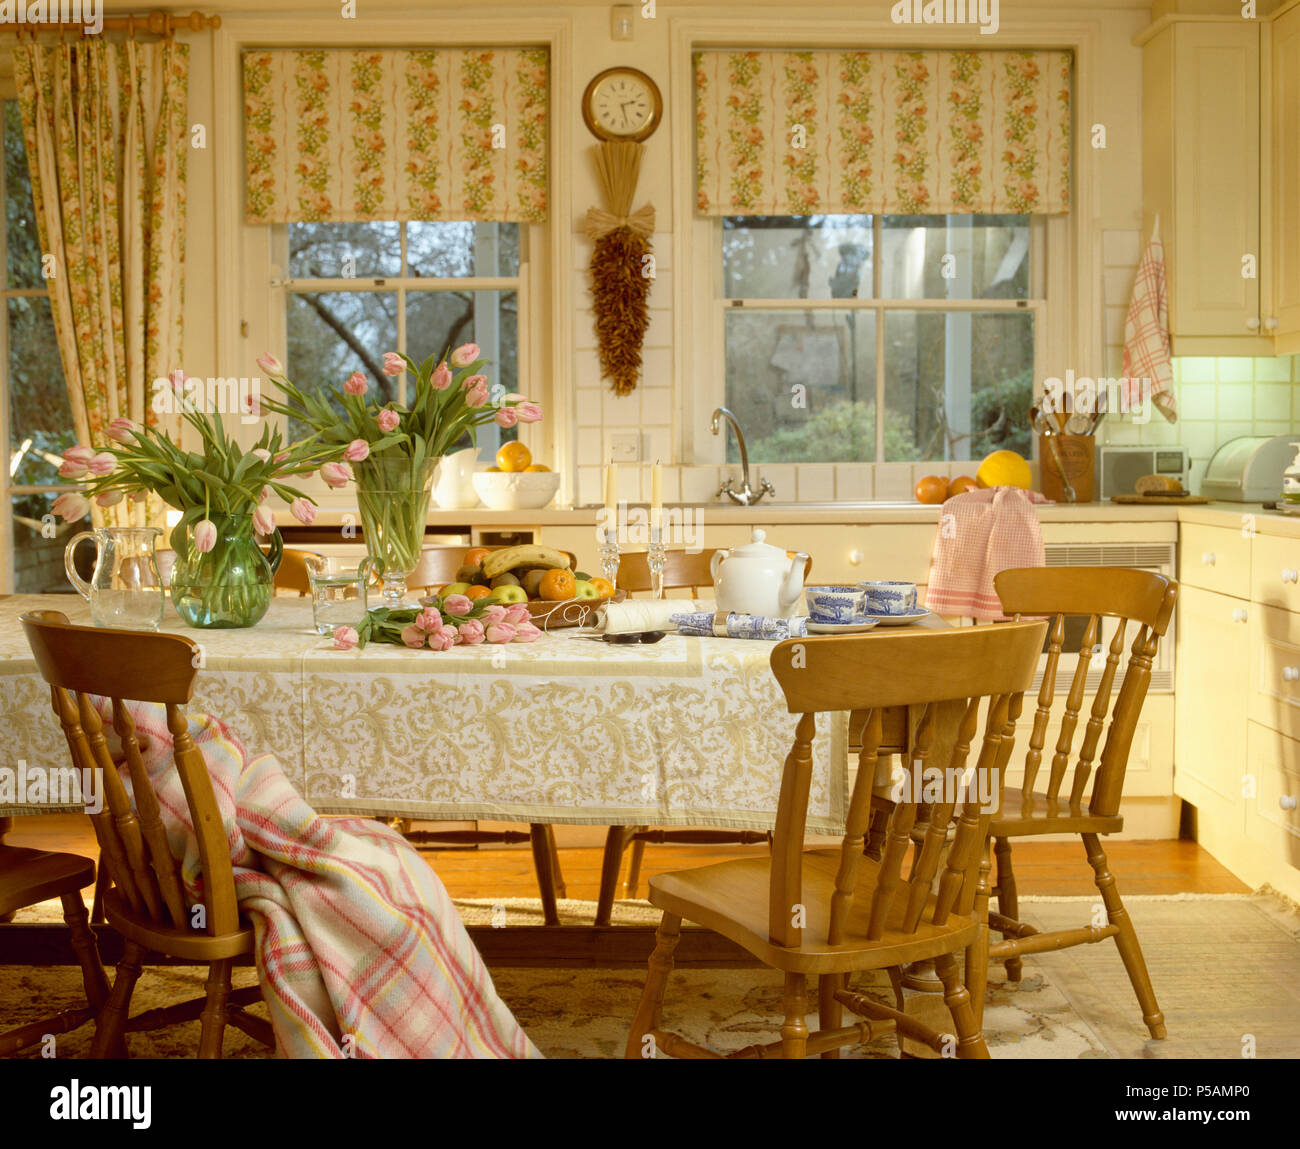 Ciego de rayas floral en windows en cocina tradicional comedor con sillas de pino en la mesa con el paño de encaje Foto de stock